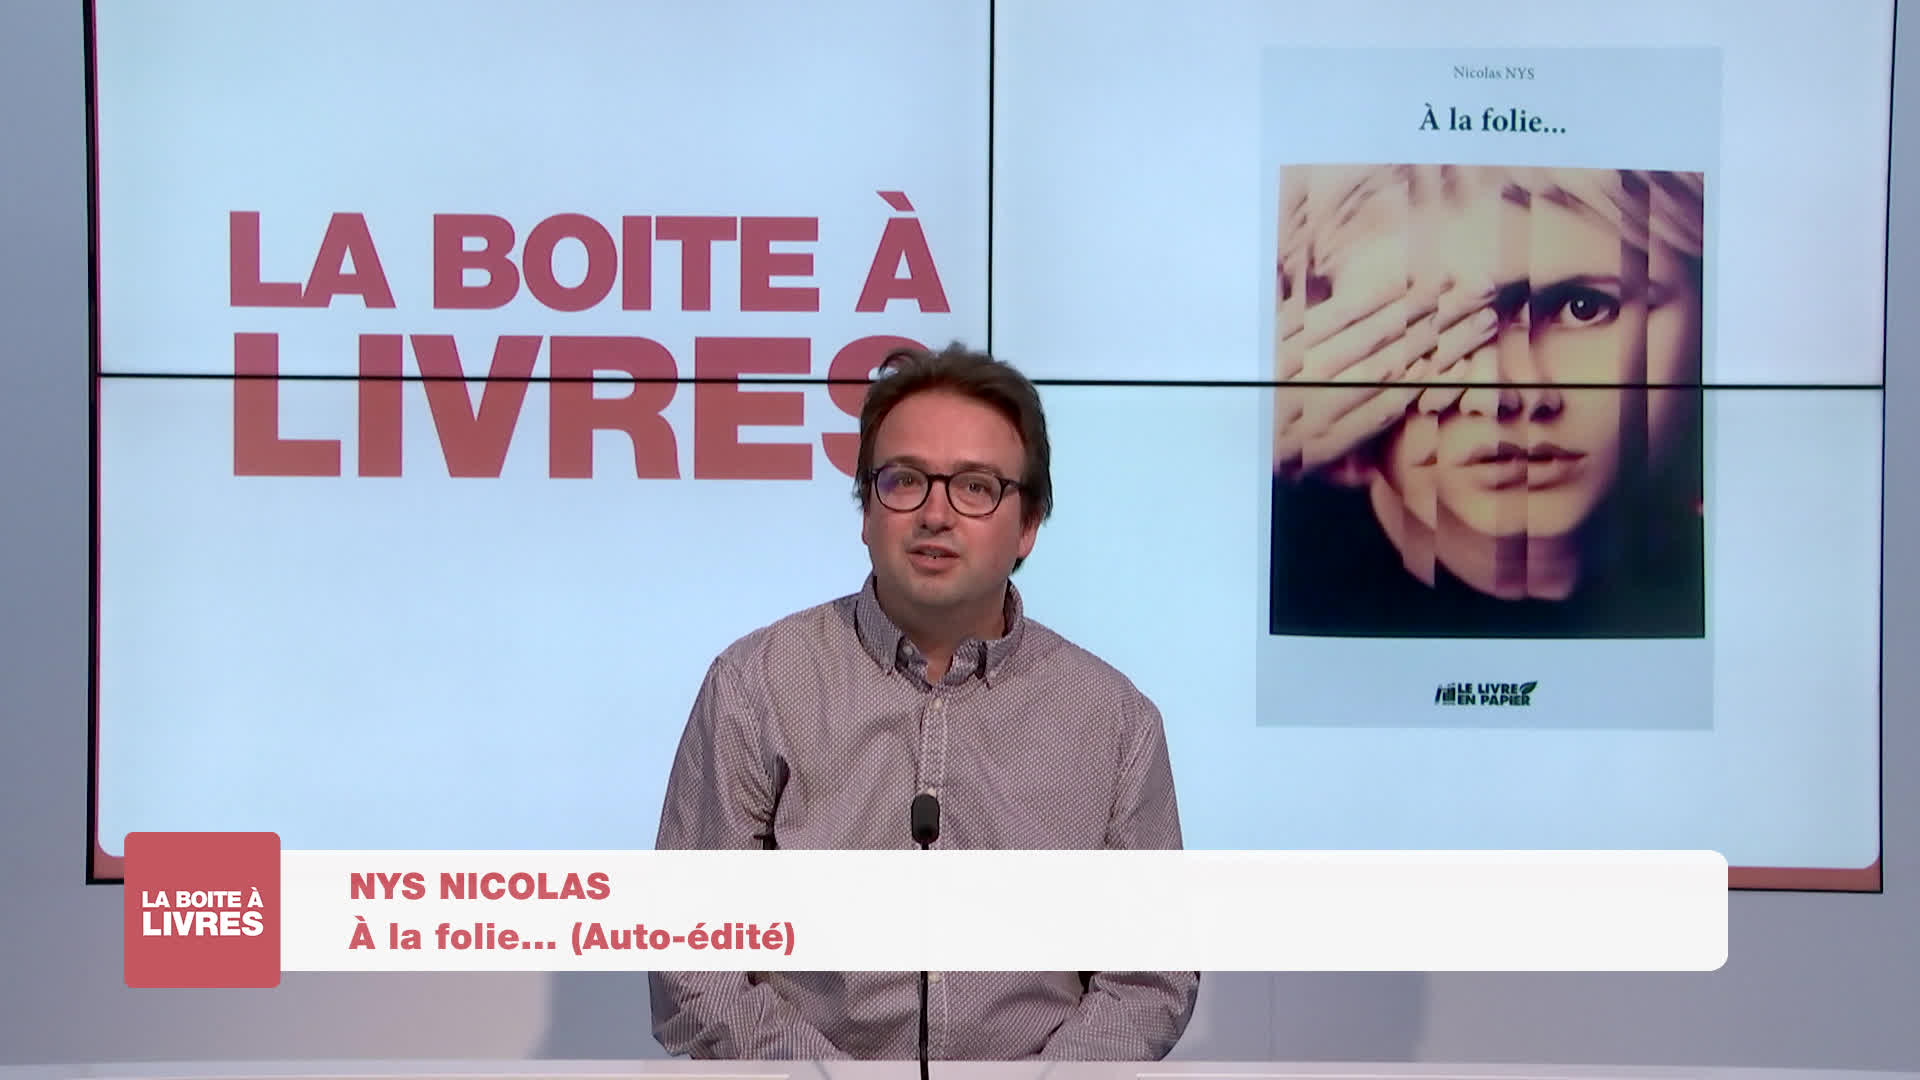 Boite à livres - Nicolas Nys, A la folie (auto édité)